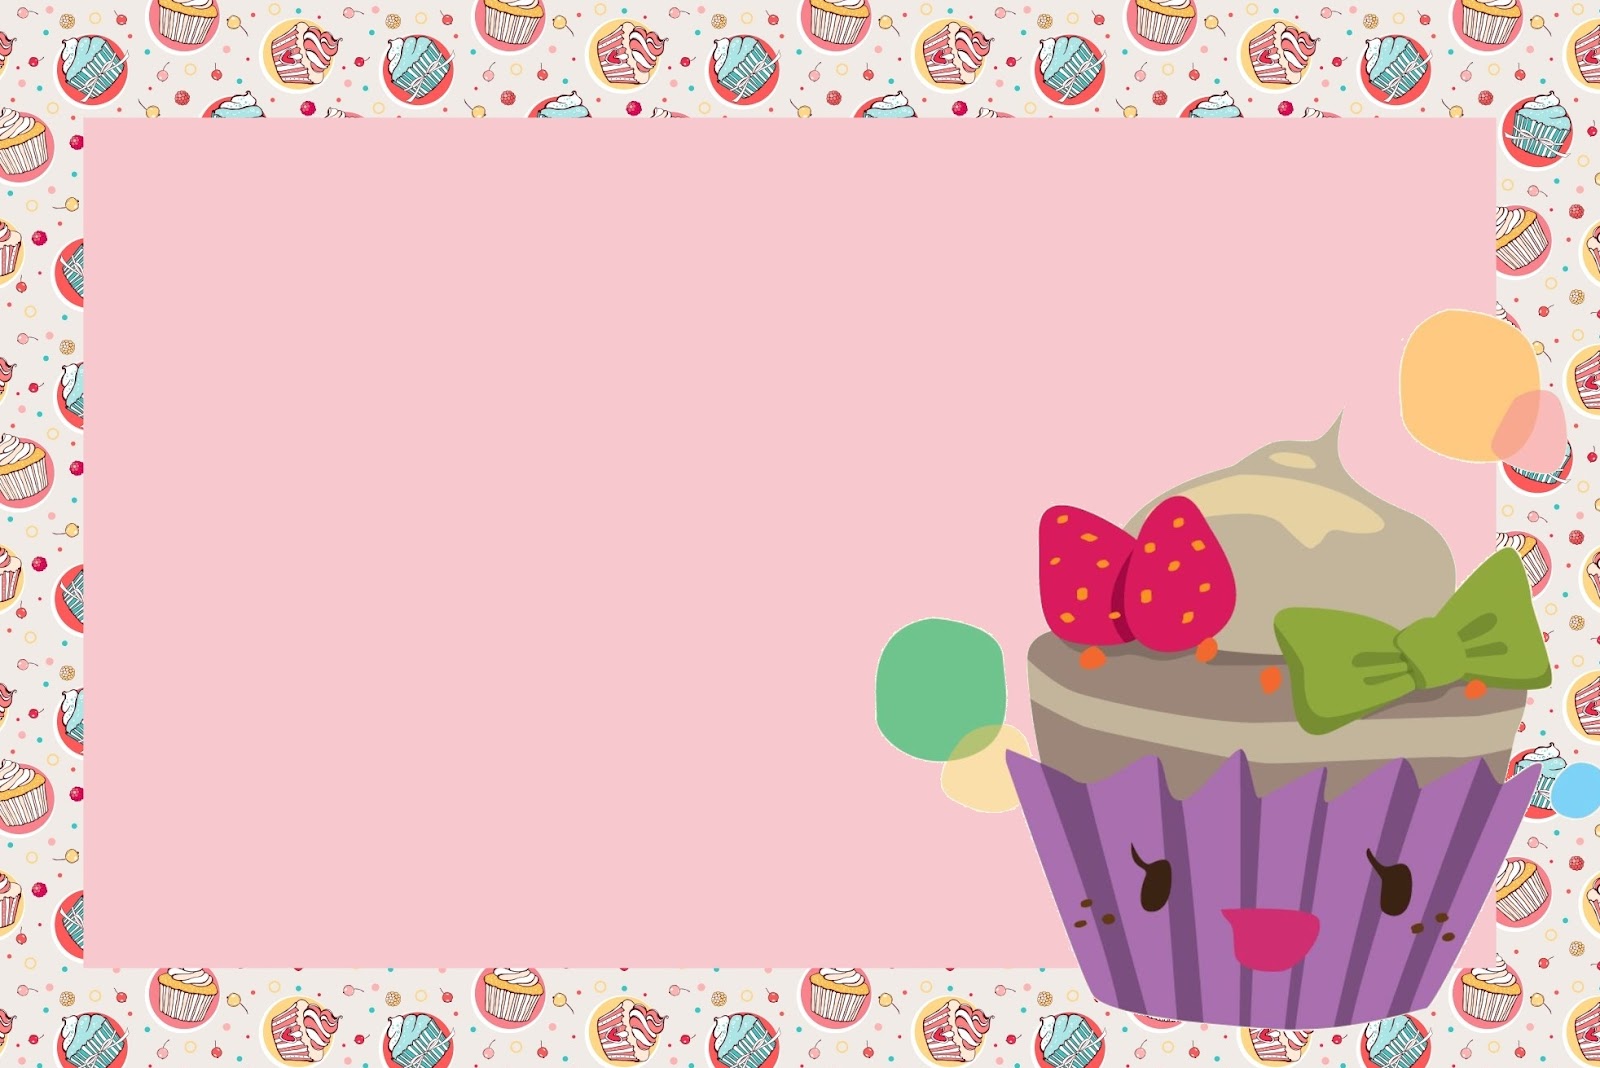 Imprimibles para fiestas de pastelitos - cupcakes 3 - Ideas y material